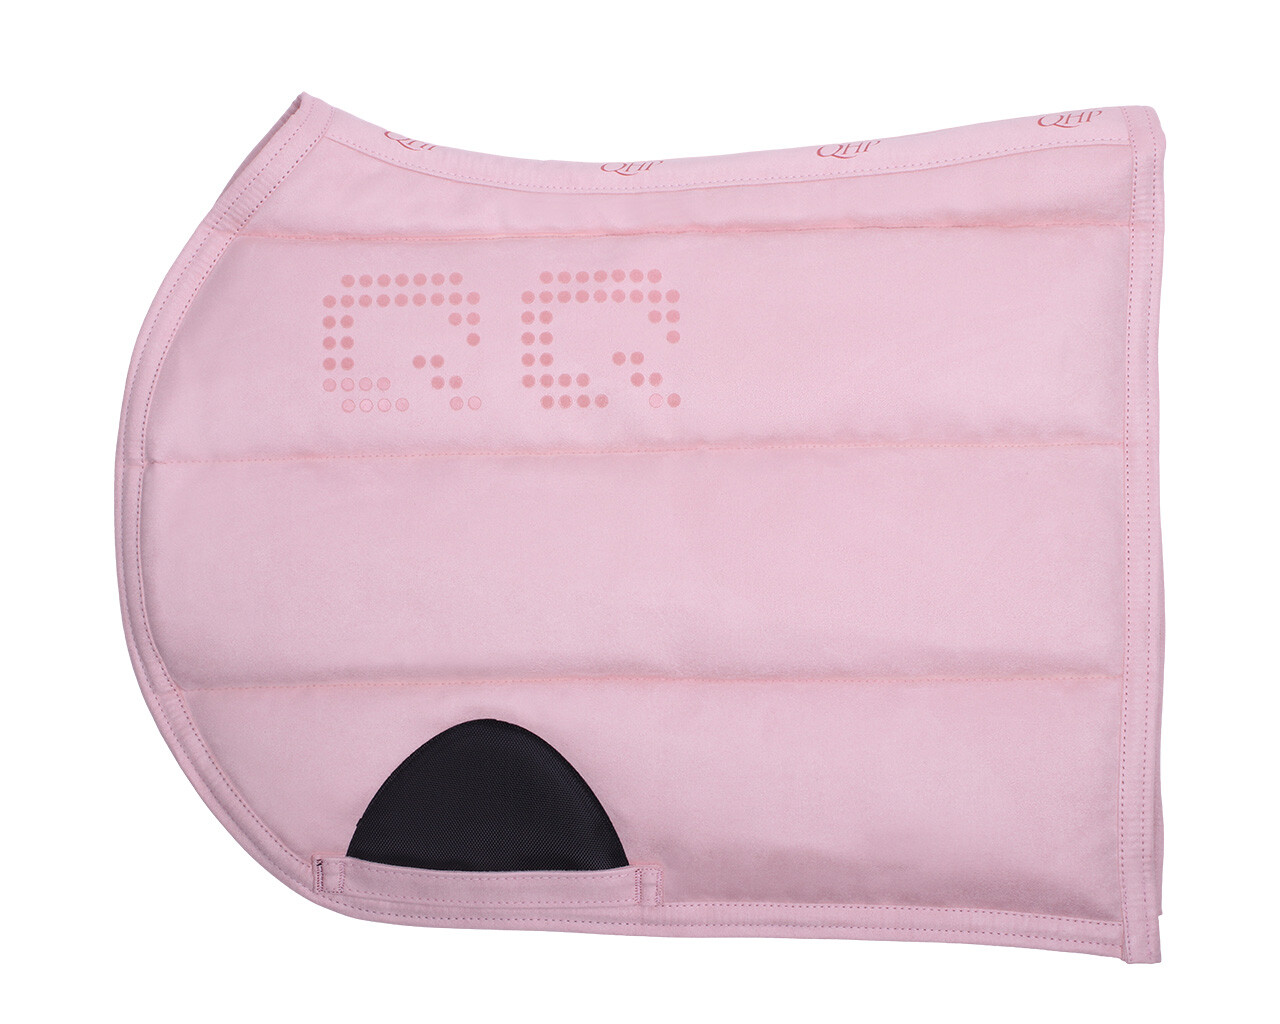 Podsedlová dečka PUFF PAD Super grip Barva: Soft pink (Světle růžová), Velikost: Full (všestranná)